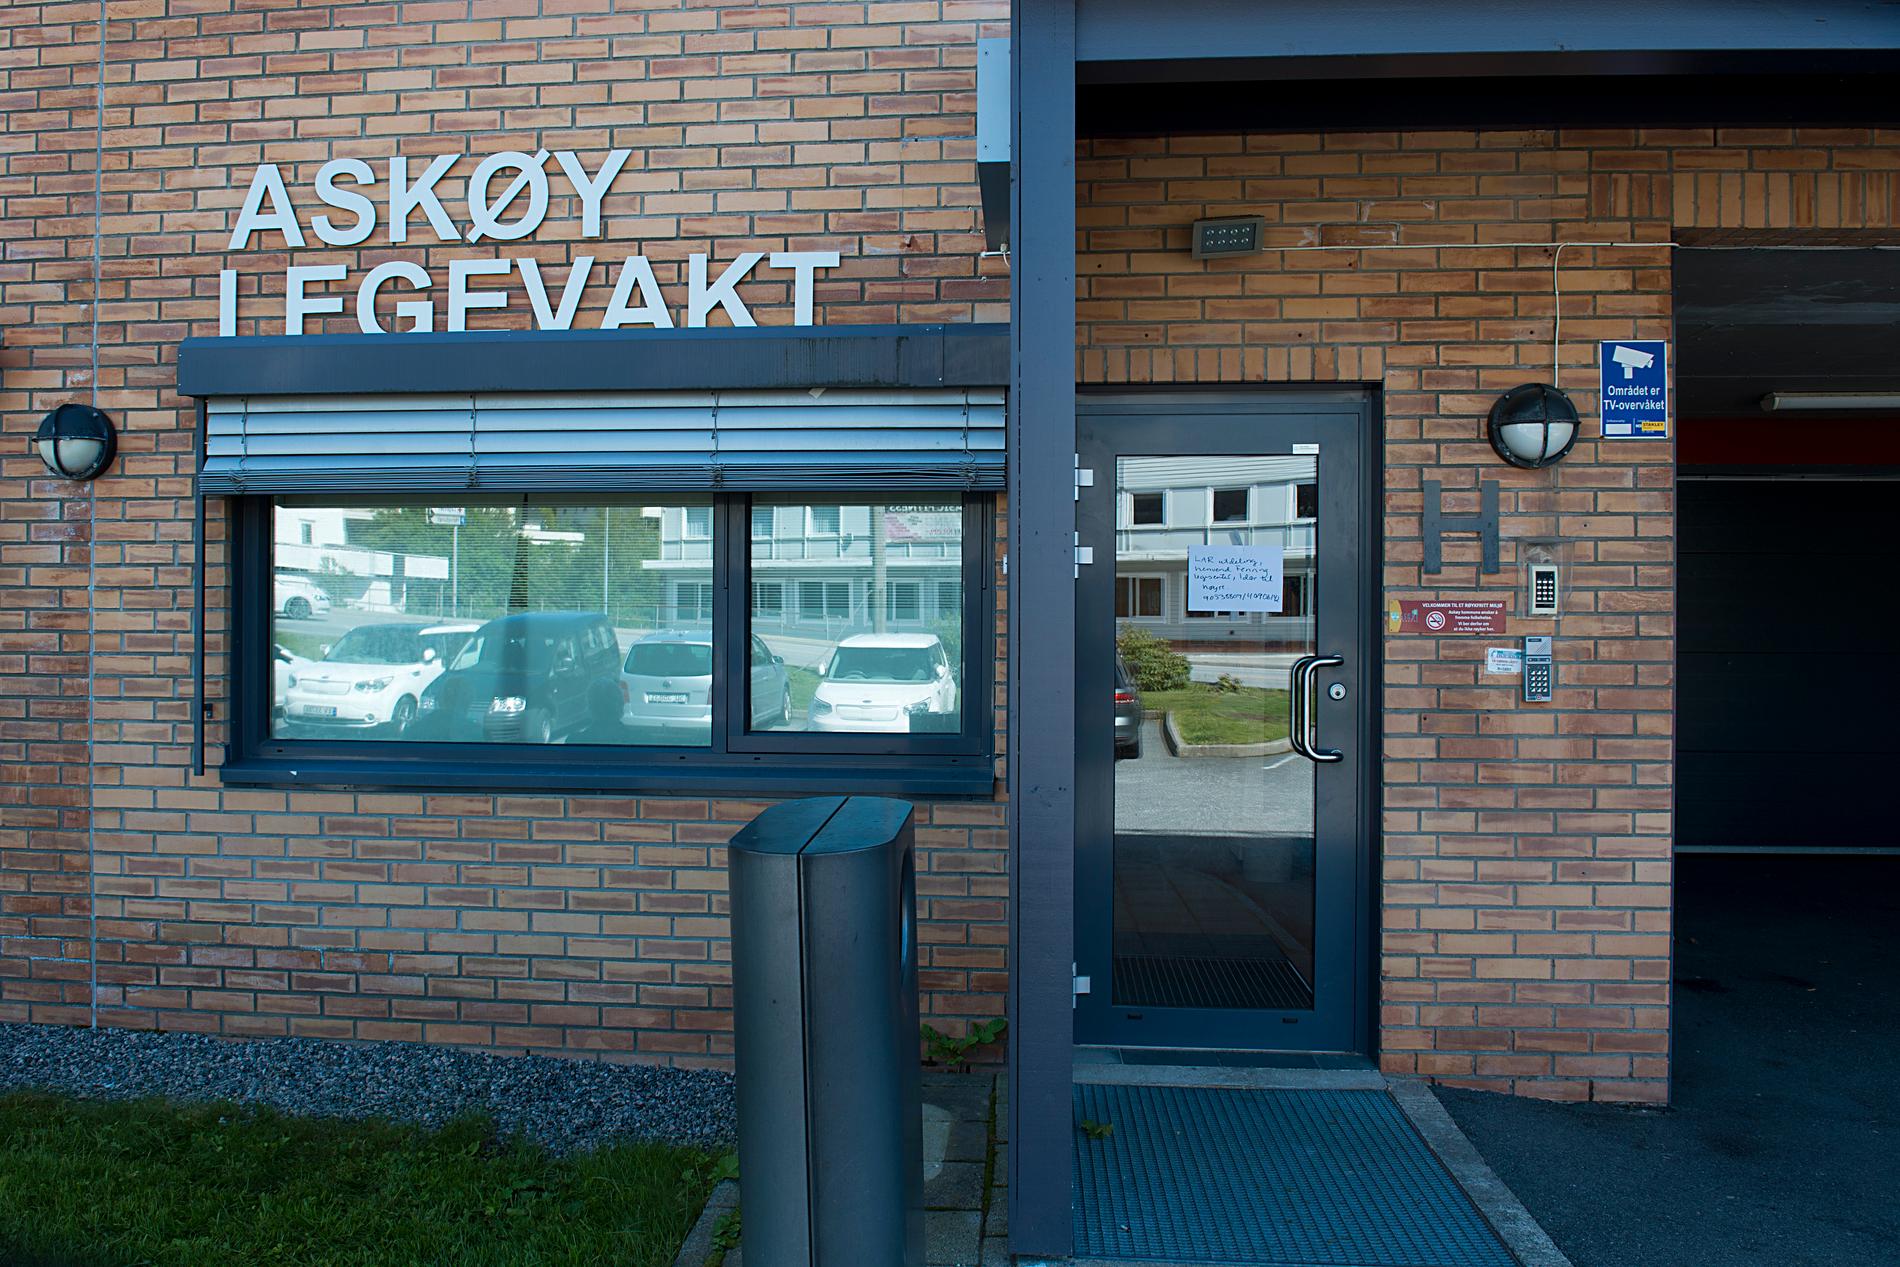 Vårdcentralen i Askøy har tagit emot mängder av människor med tarm- och magsymtom den senaste veckan. Bilden är tagen den 7 juni.